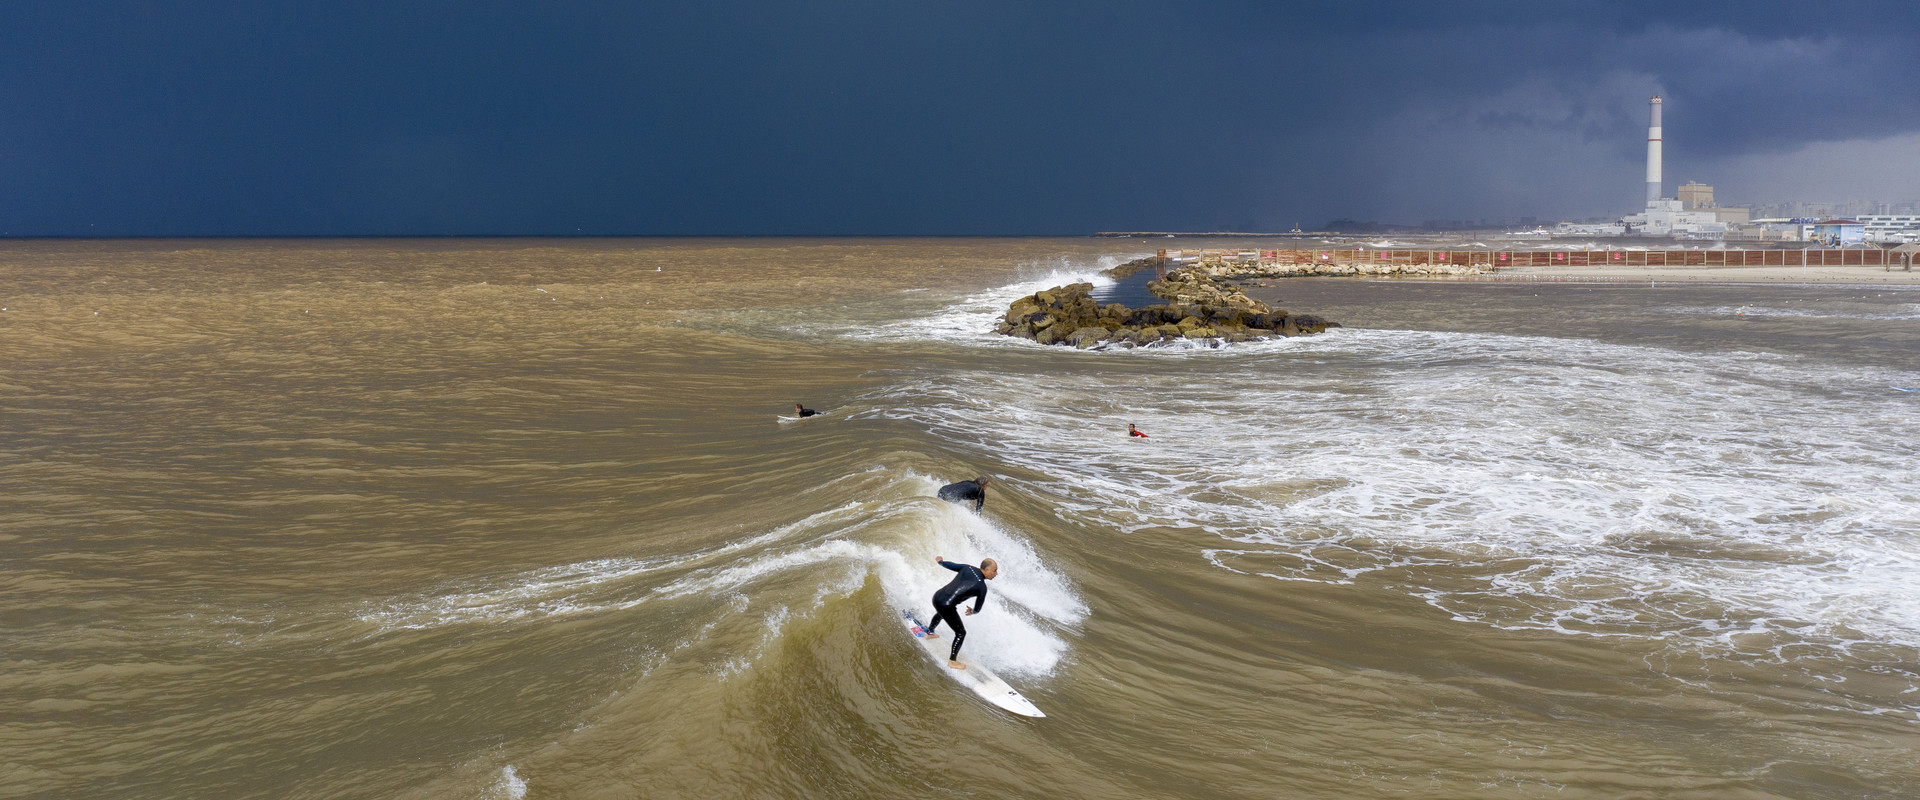 סערה בחוף הים של תל אביב ינואר 2020 (צילום: Oded Balilty, AP)